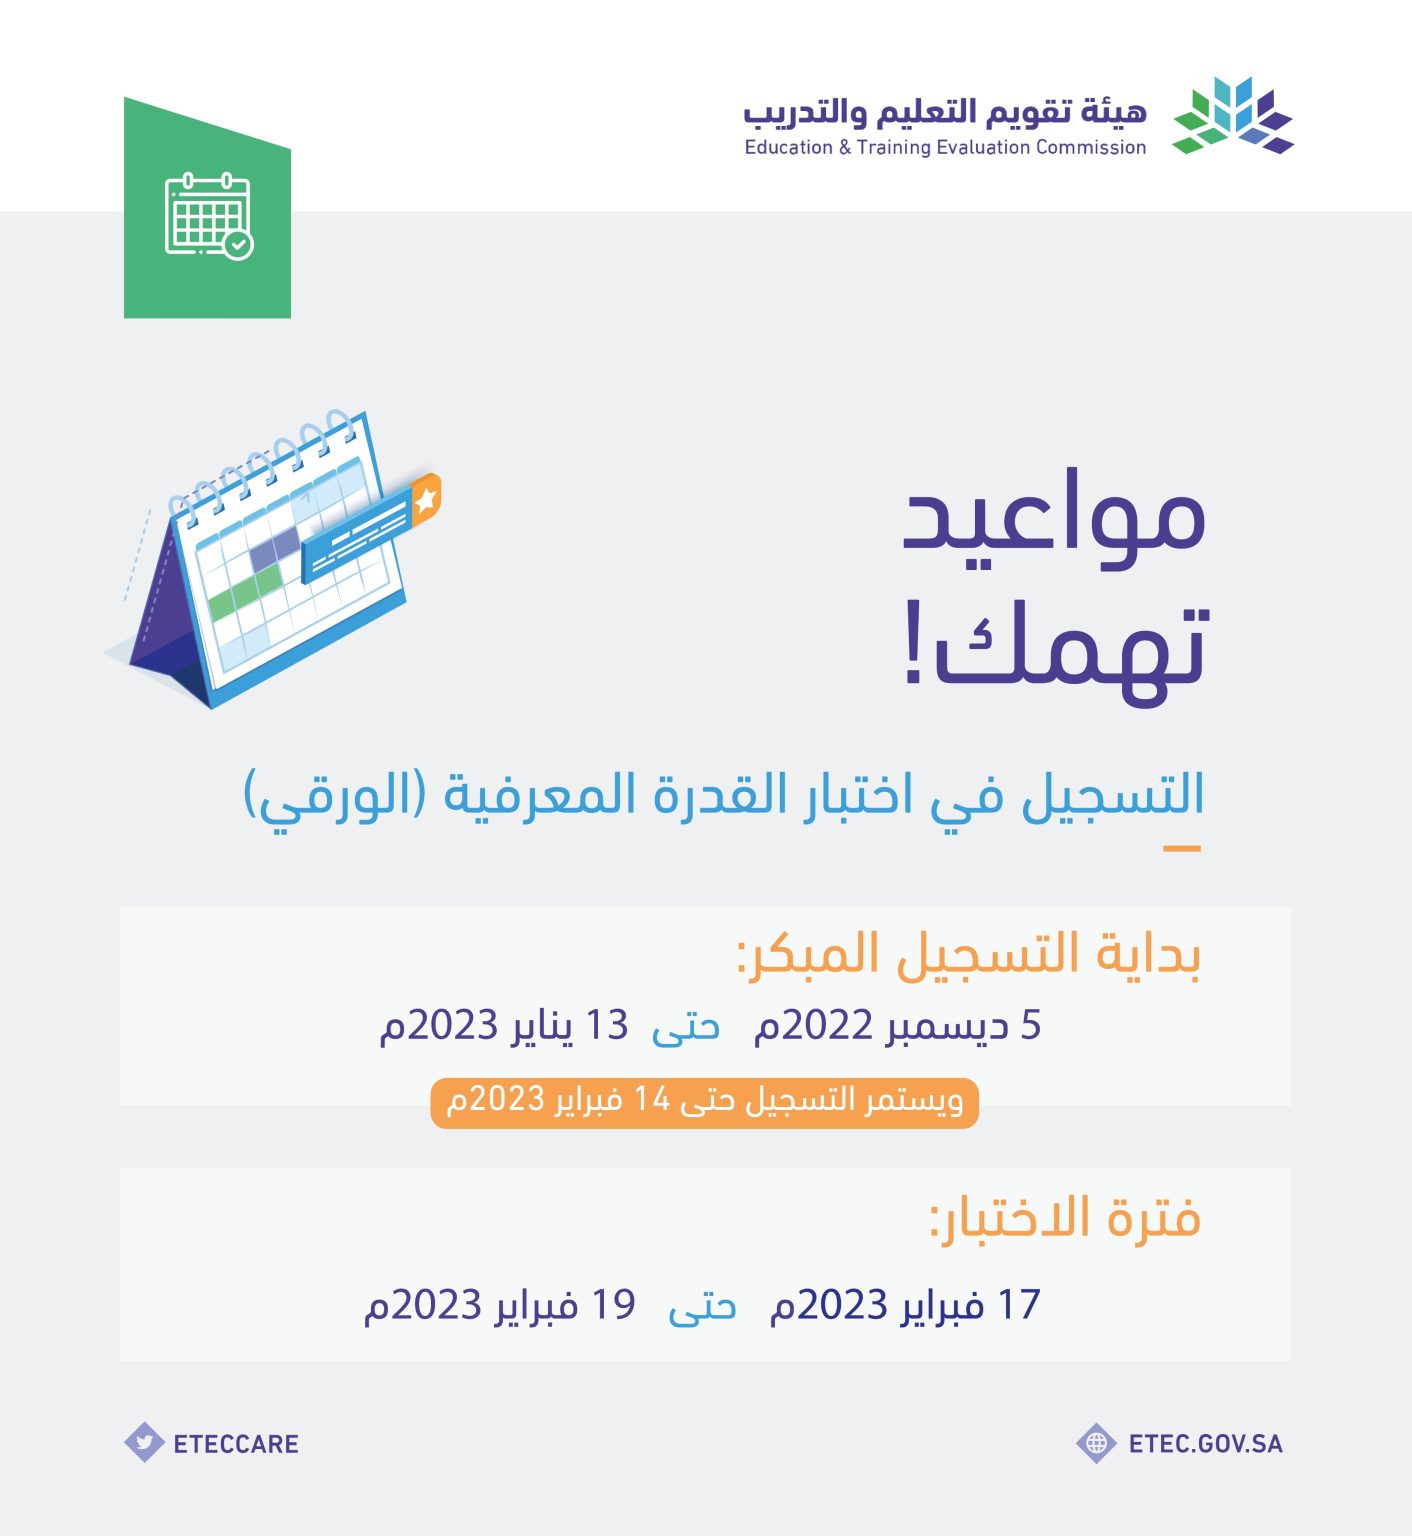 علان هيئة تقويم التعليم والتدريب في المملكة العربية السعودية عن مواعيد التسجيل في اختبار الرخصة المهنية للمعلمين والخرجين 1412x1536 1 - مدونة التقنية العربية